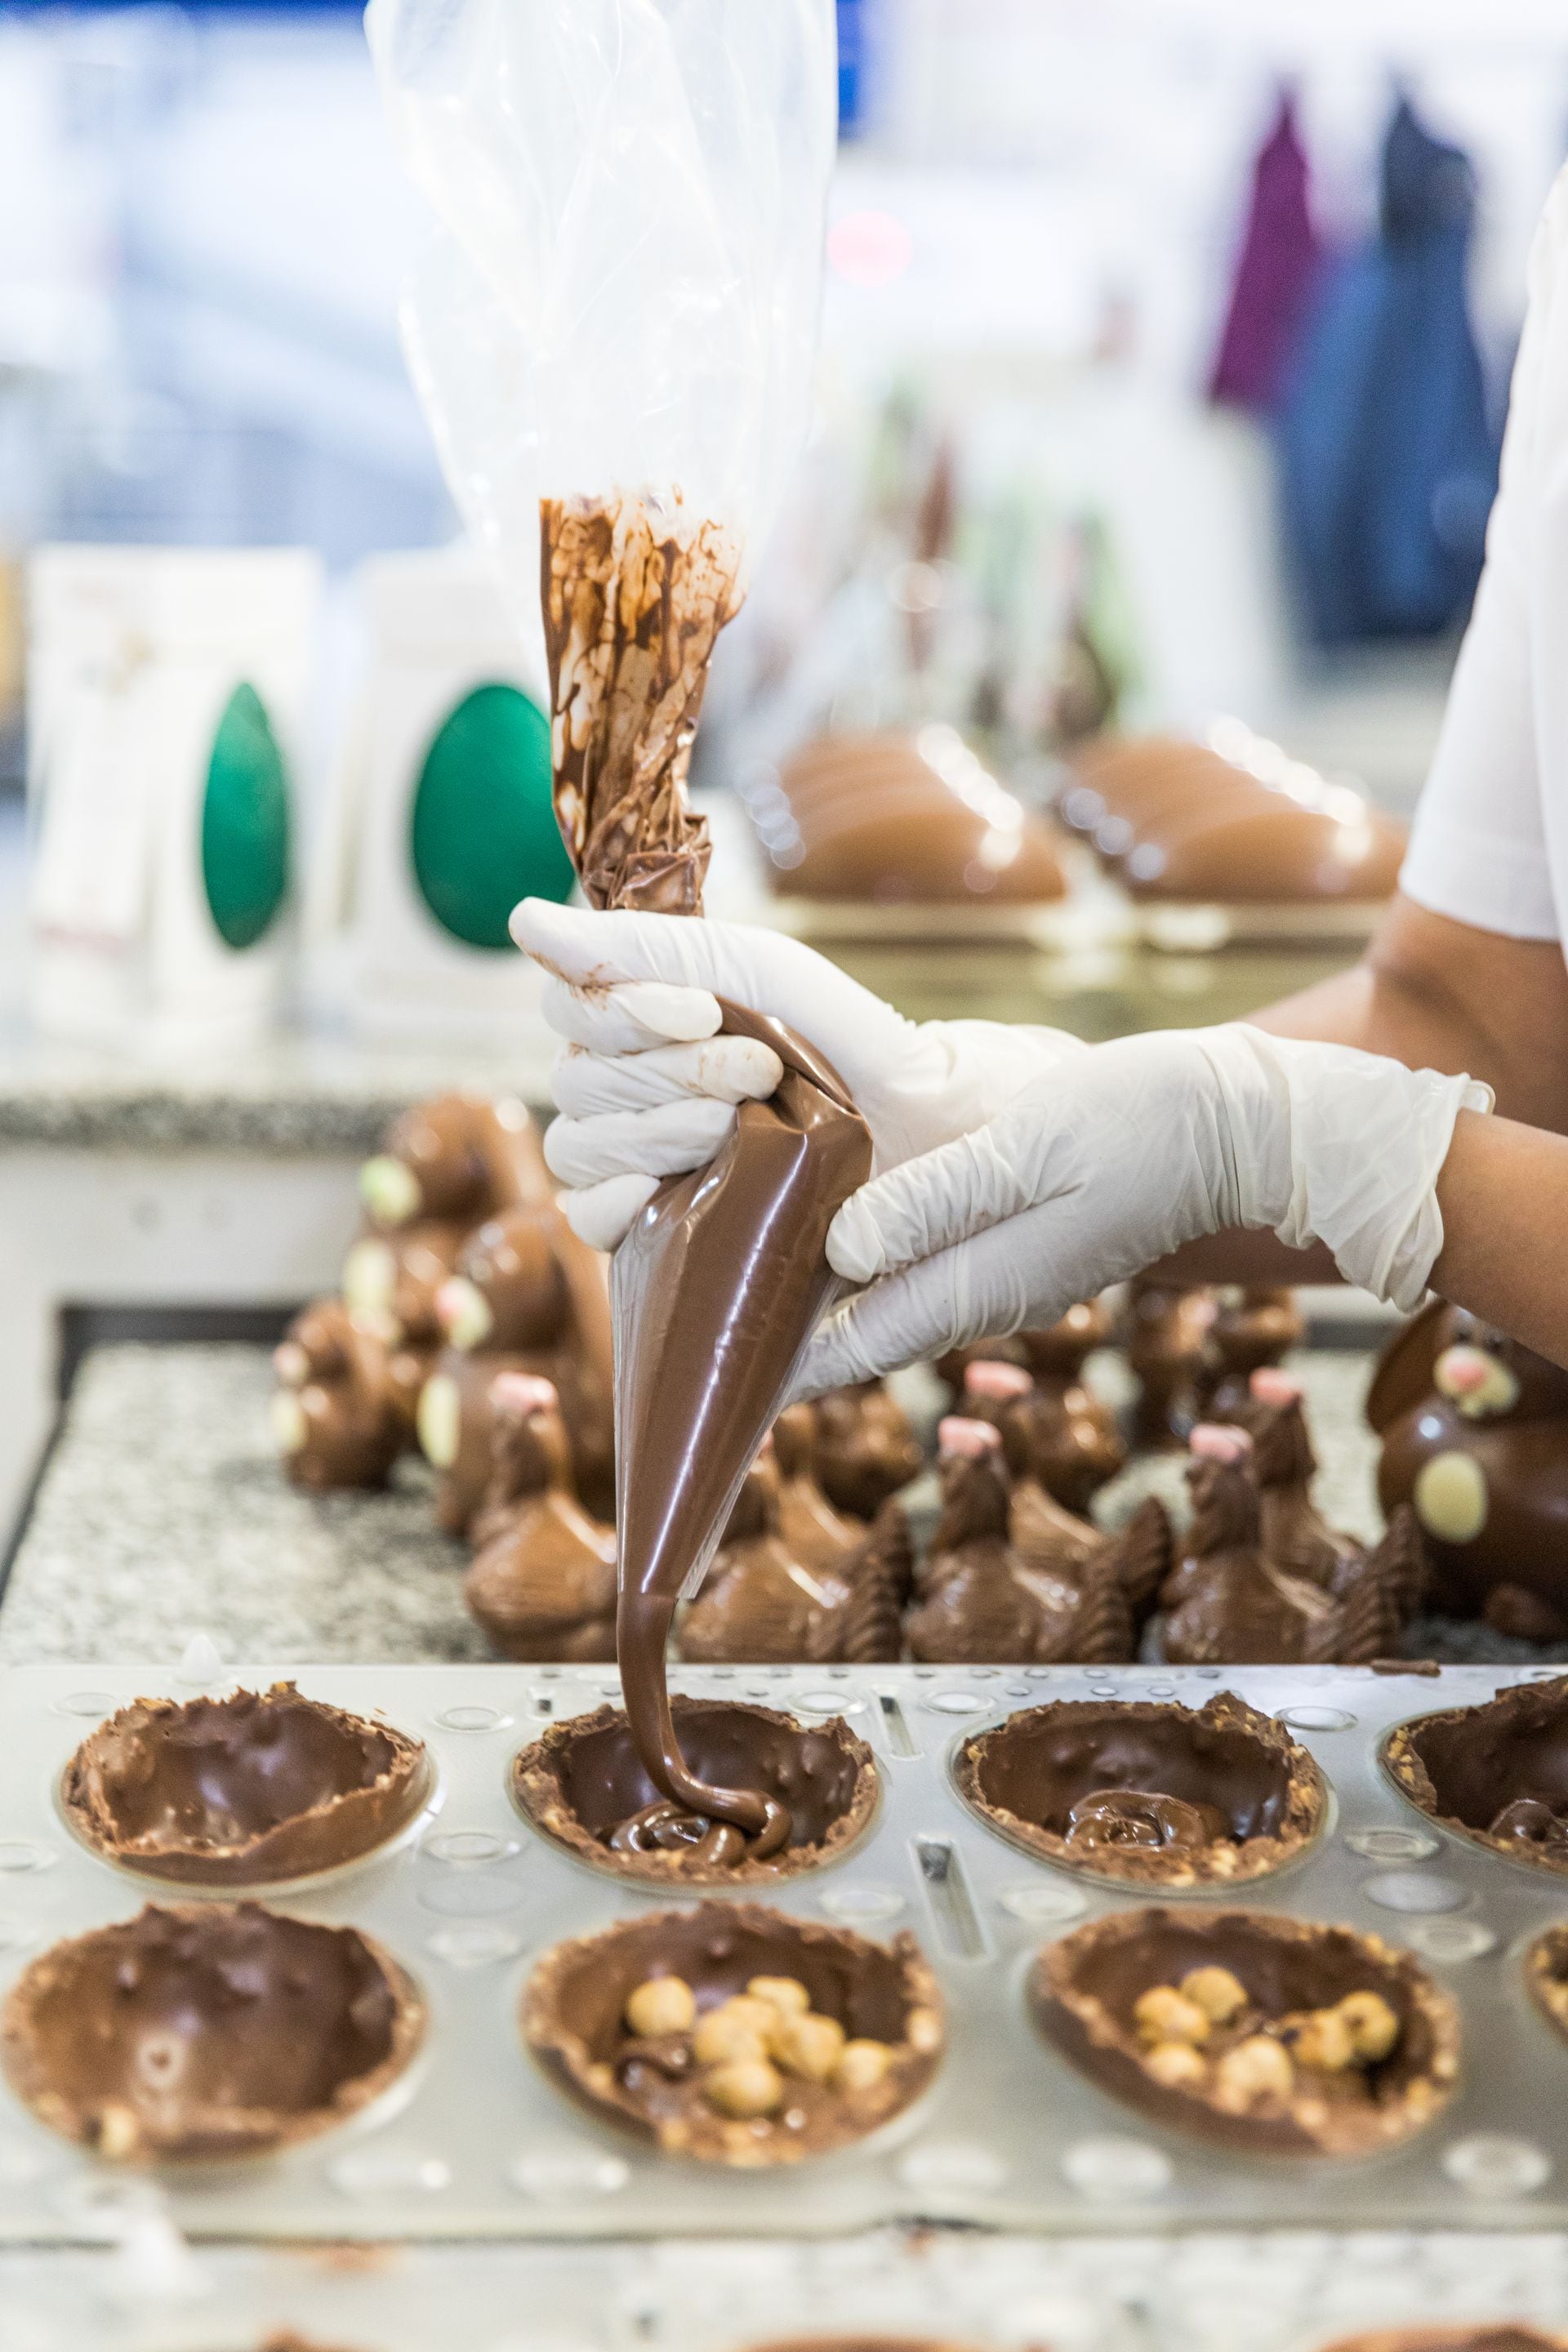 El proceso de elaboración artesanal en la fábrica Rapanui, de donde salen 90 toneladas de chocolate por mes.